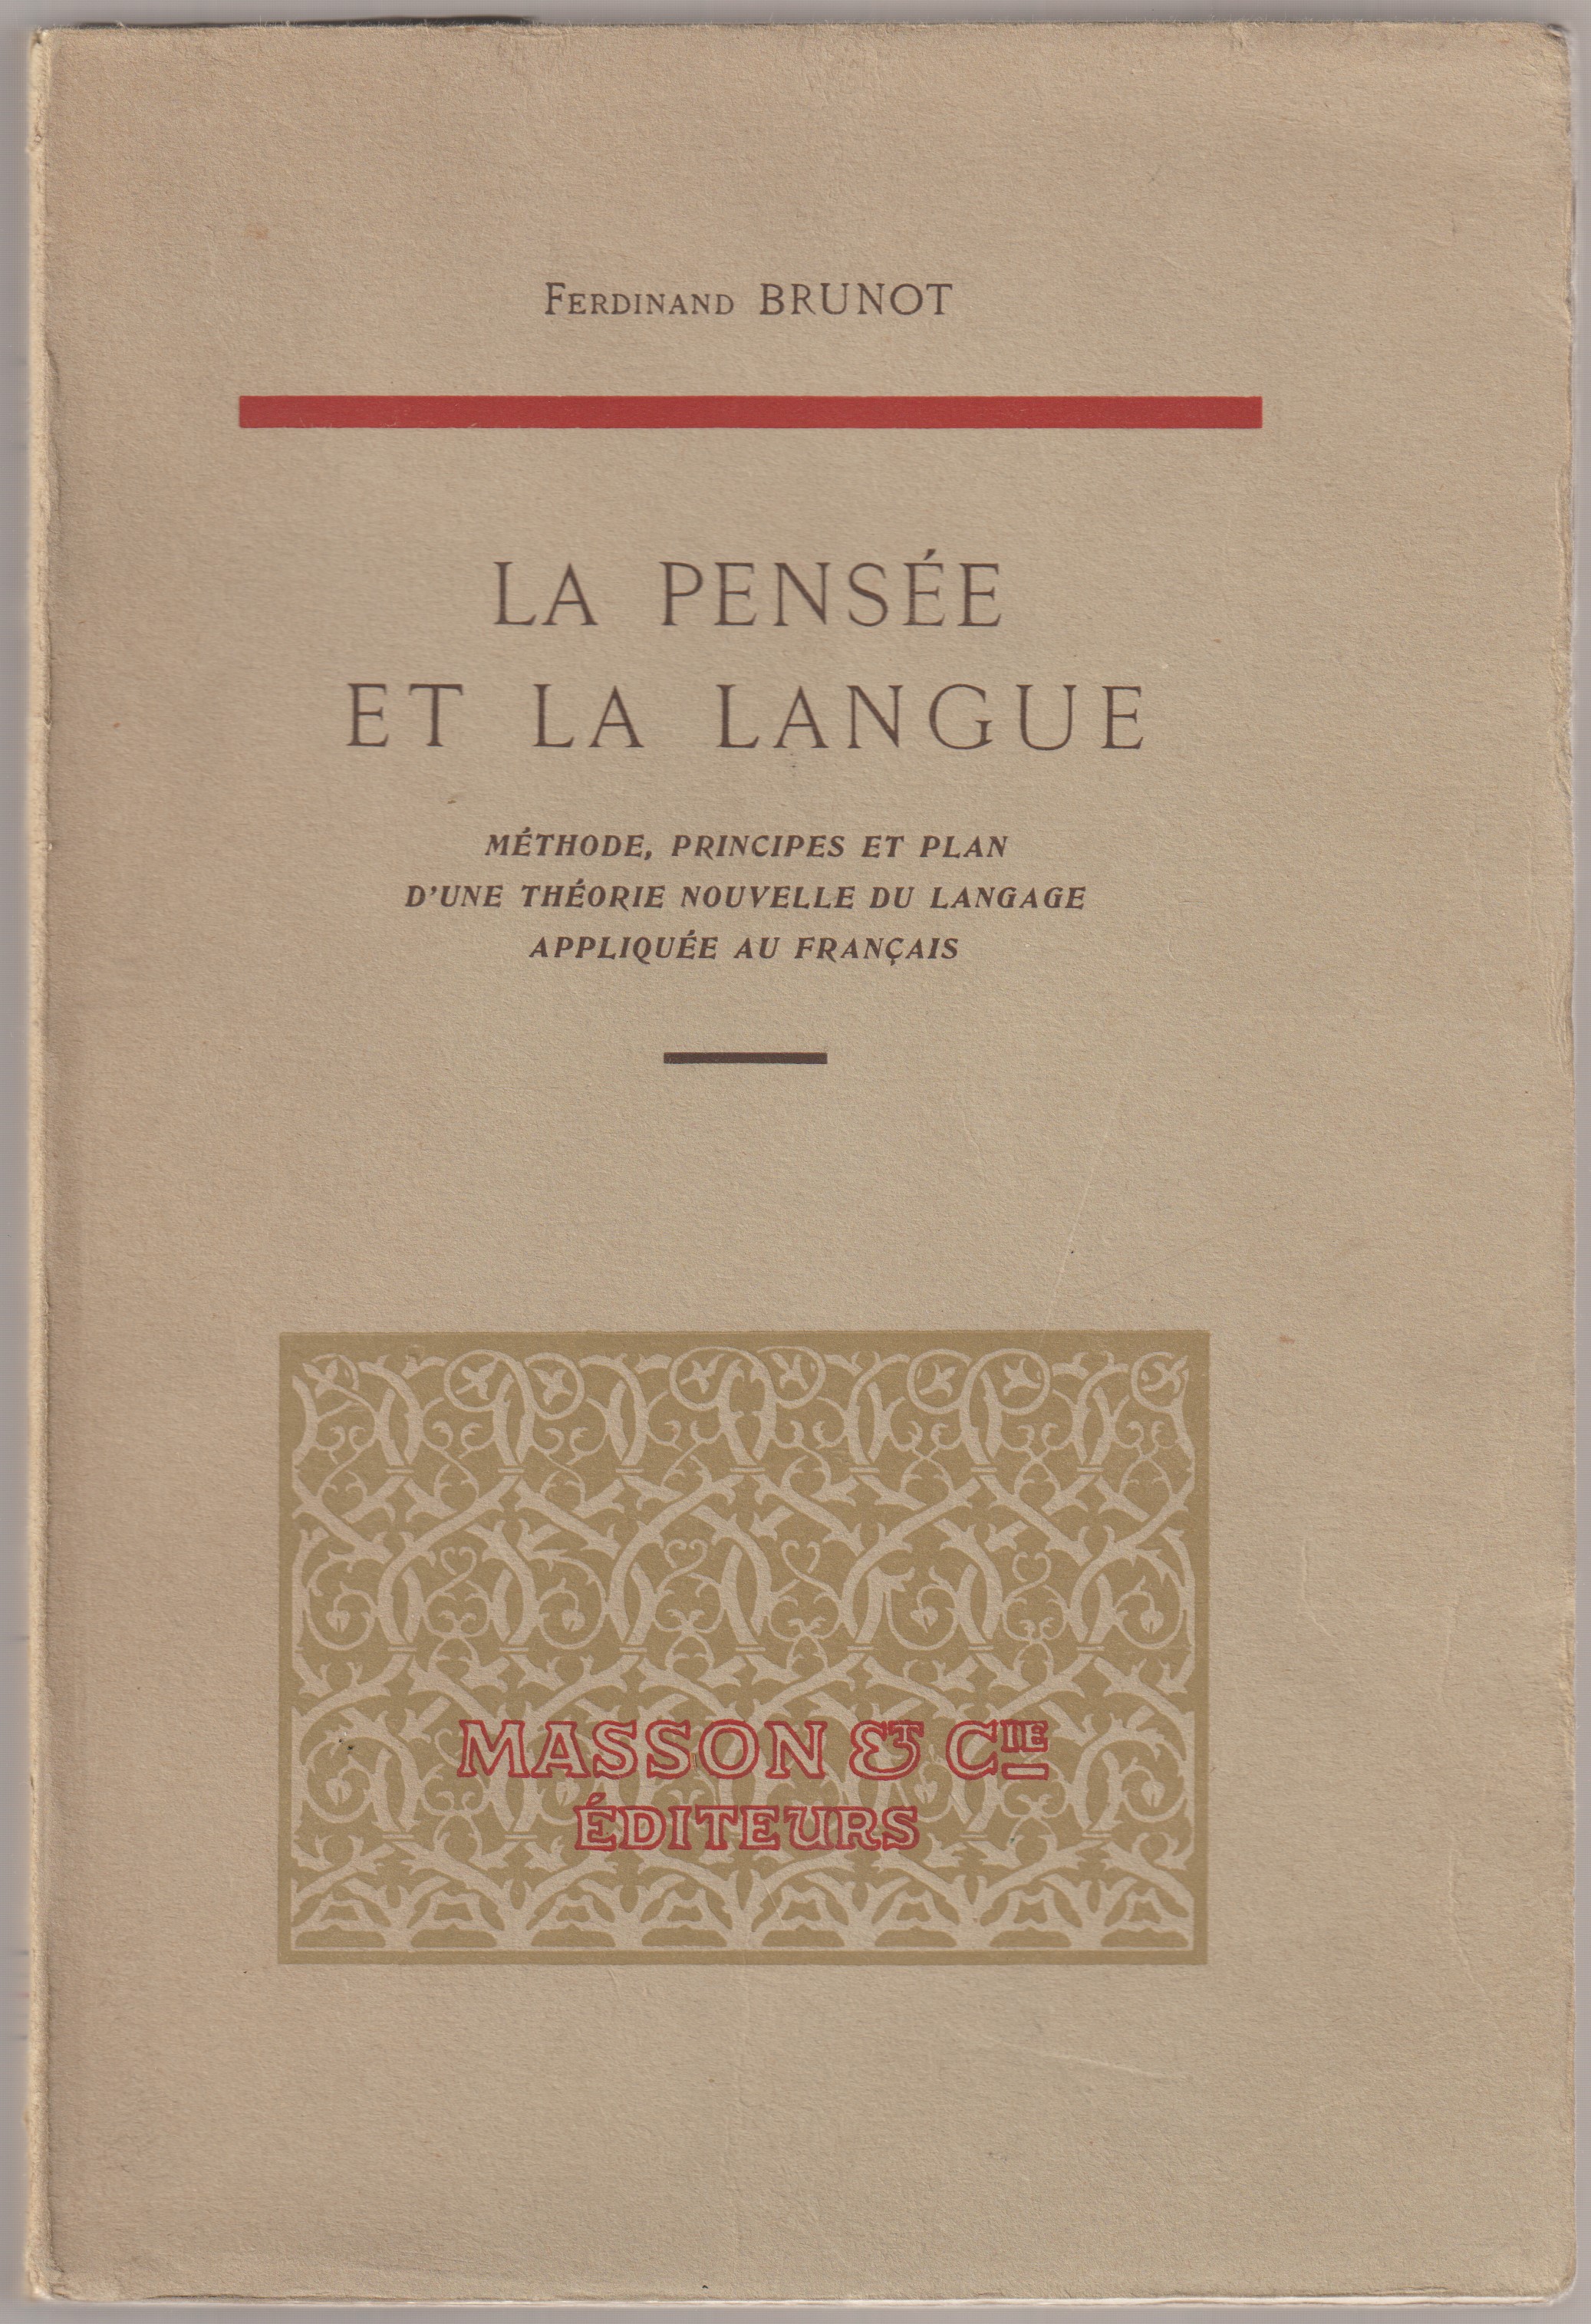 La pensee et la langue : methode, principes et plan d'une theorie nouvelle du langage appliquee au francais